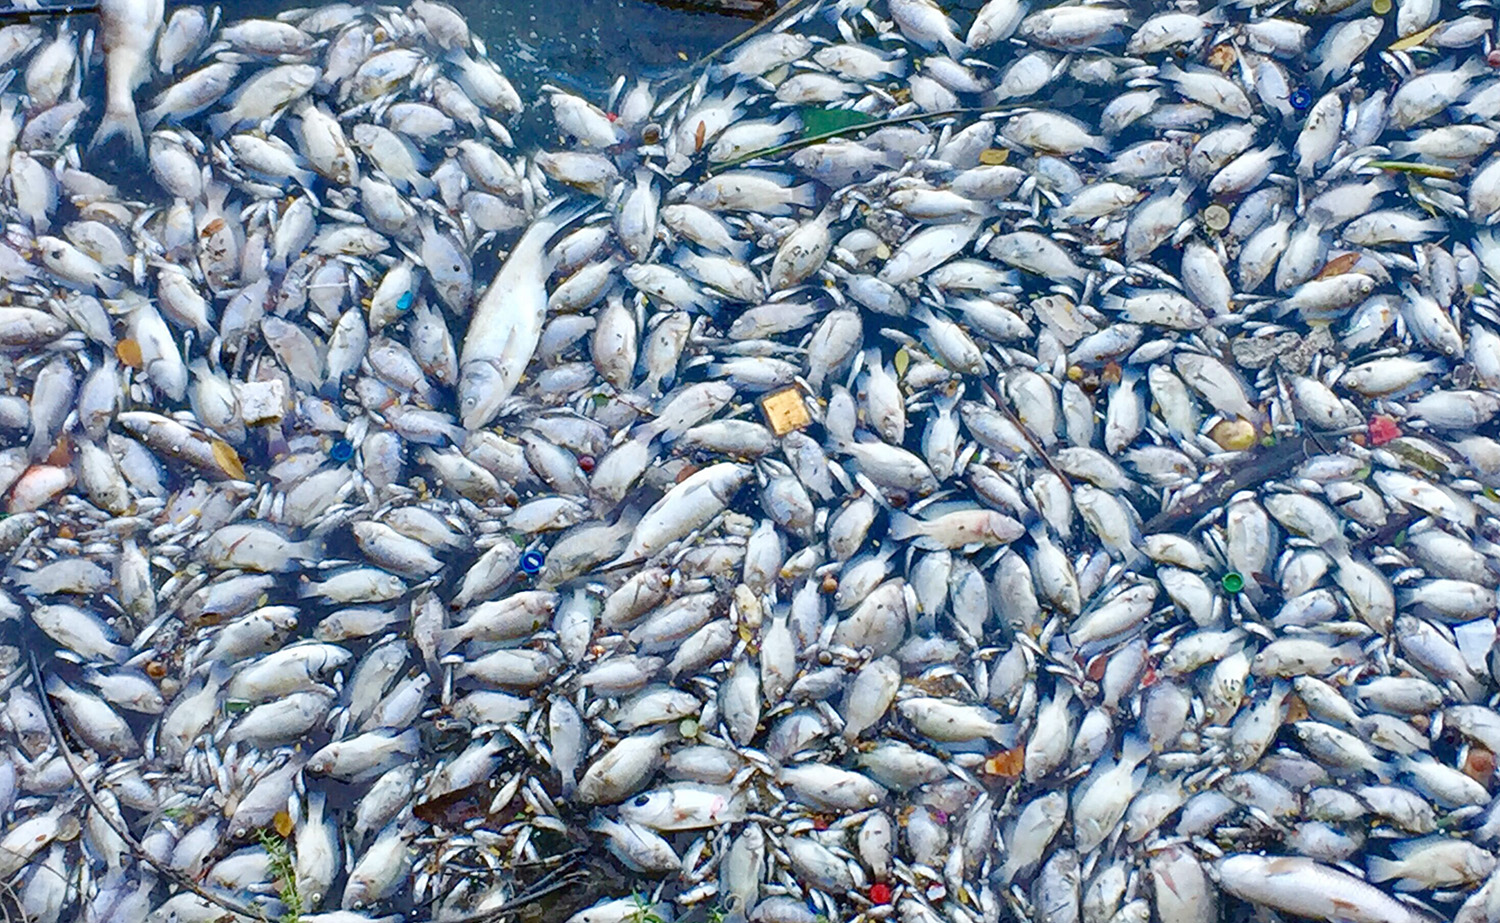 Cá chết nổi thành mảng trắng ở Hồ Tây do thay đổi thời tiết - Ảnh 1.